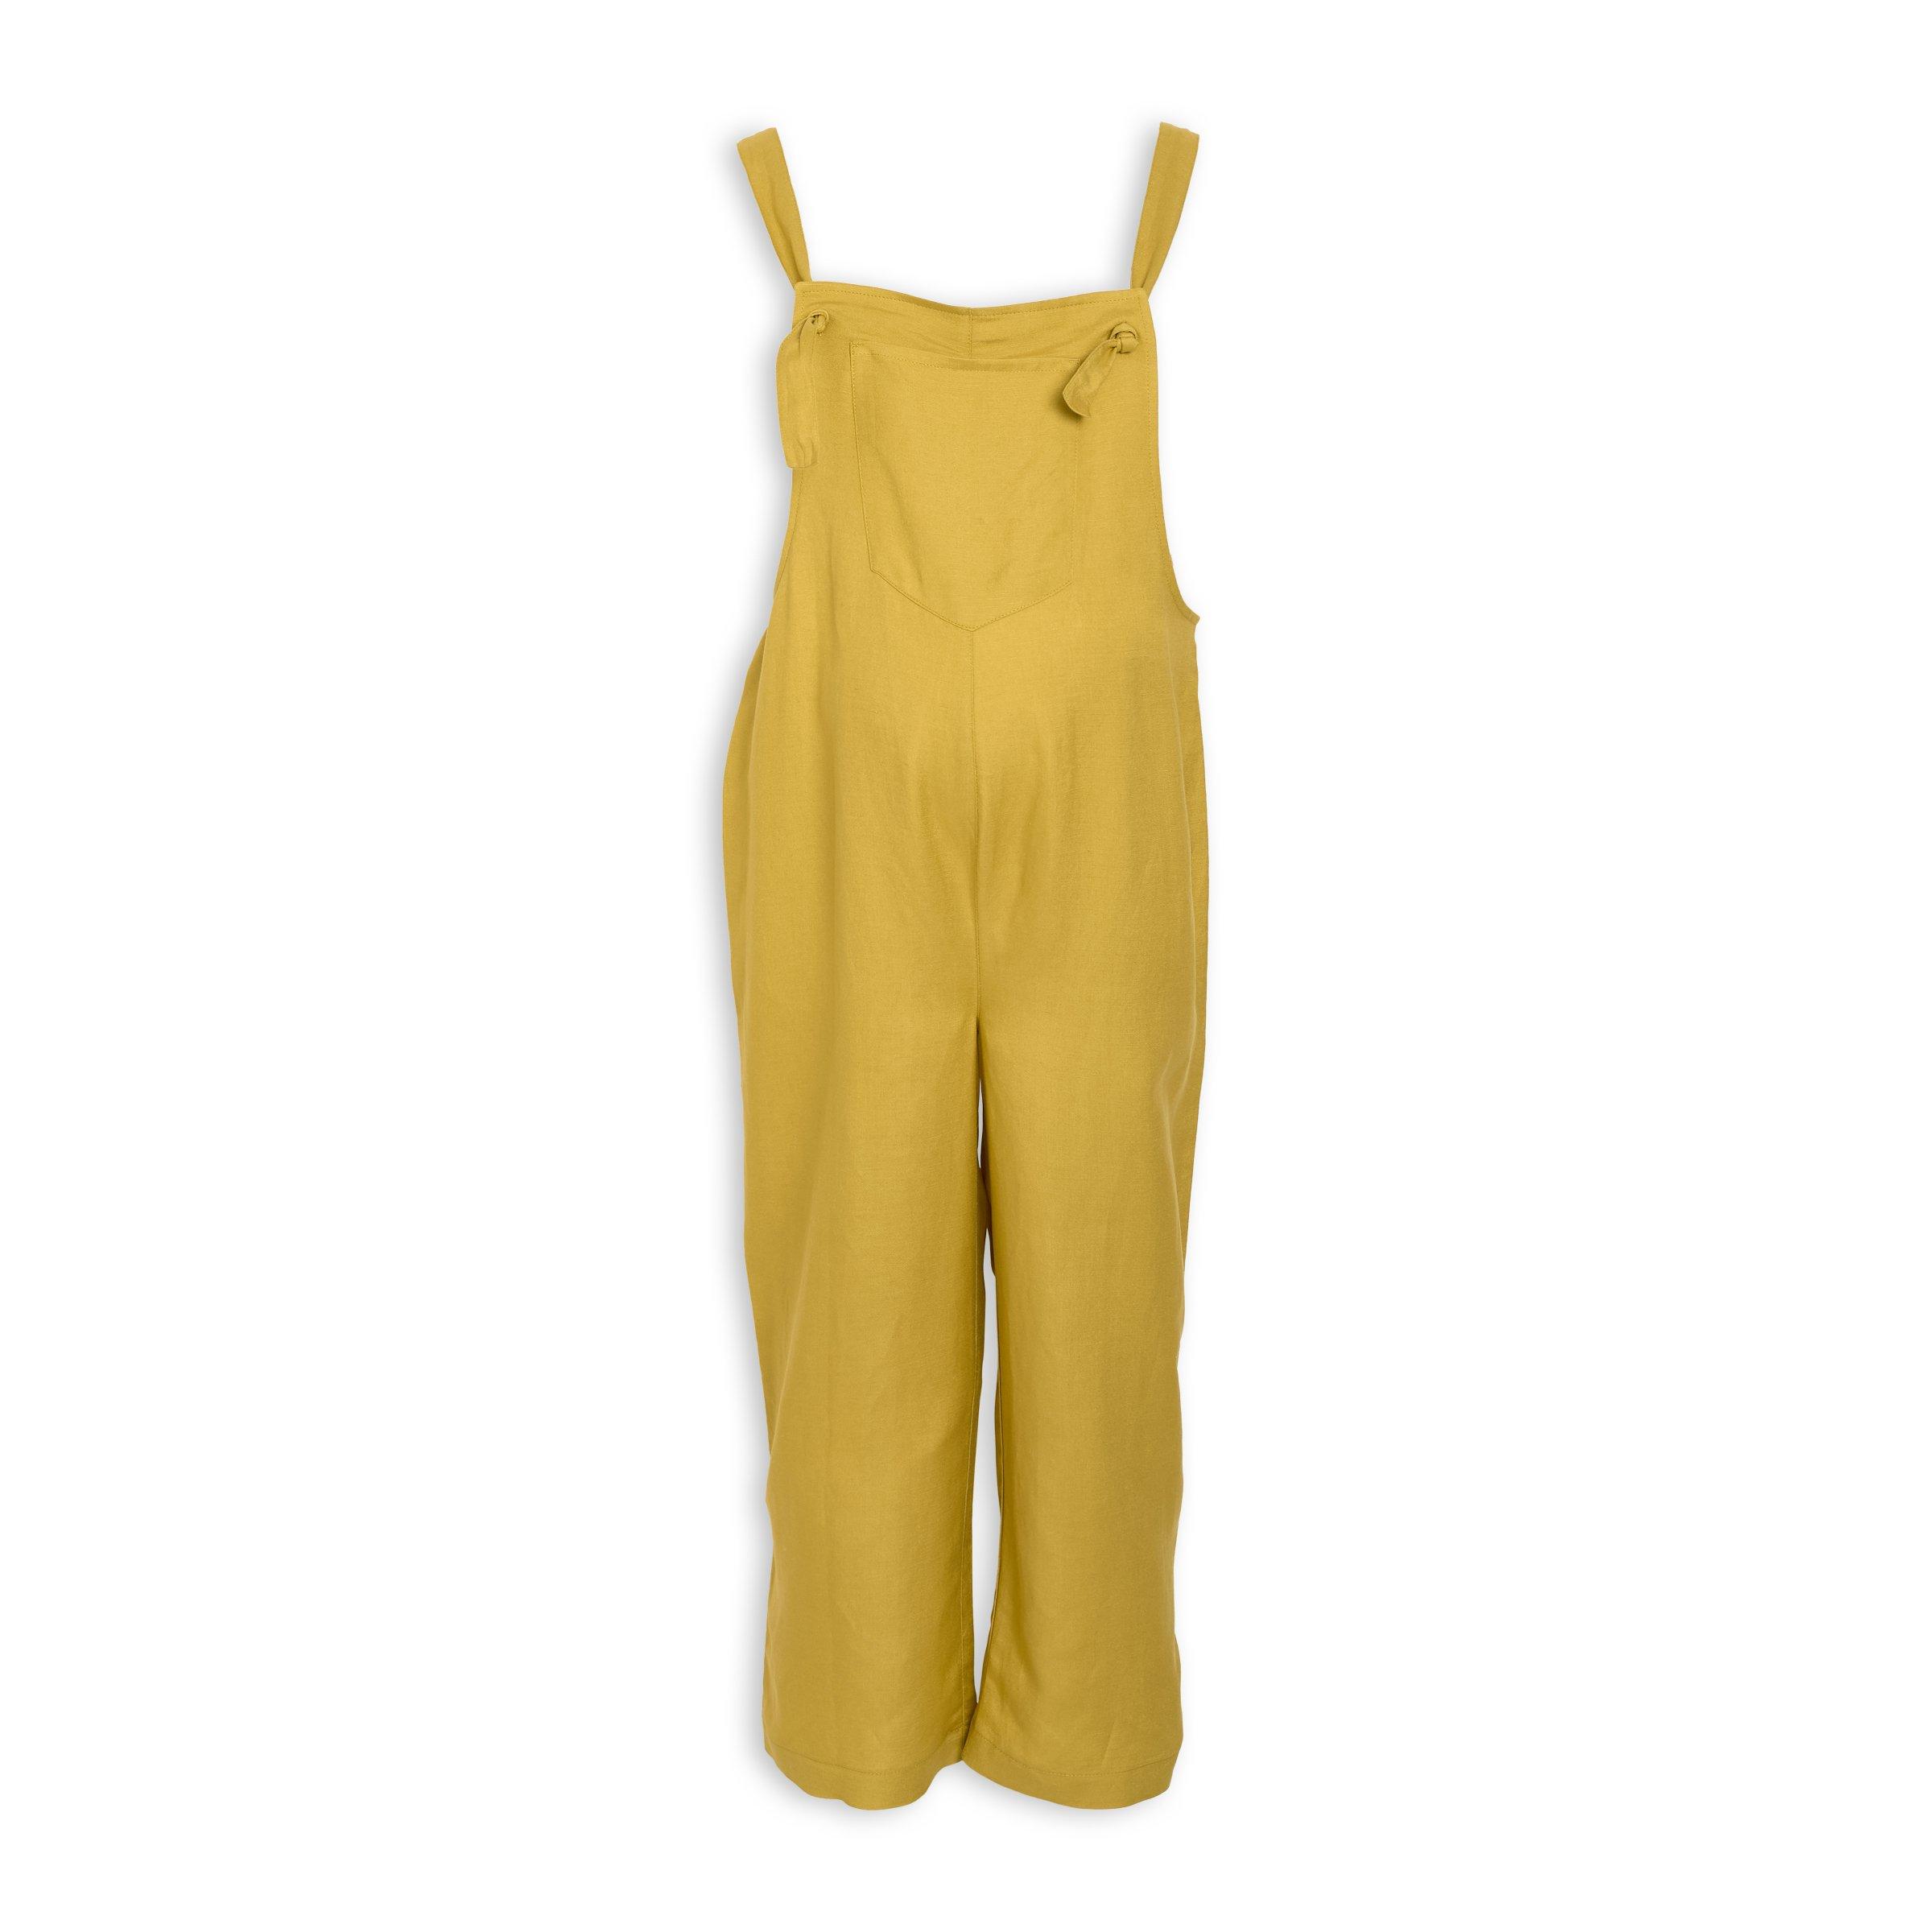 Buy Truworths Chartreuse Linen Jumpsuit Online | Truworths